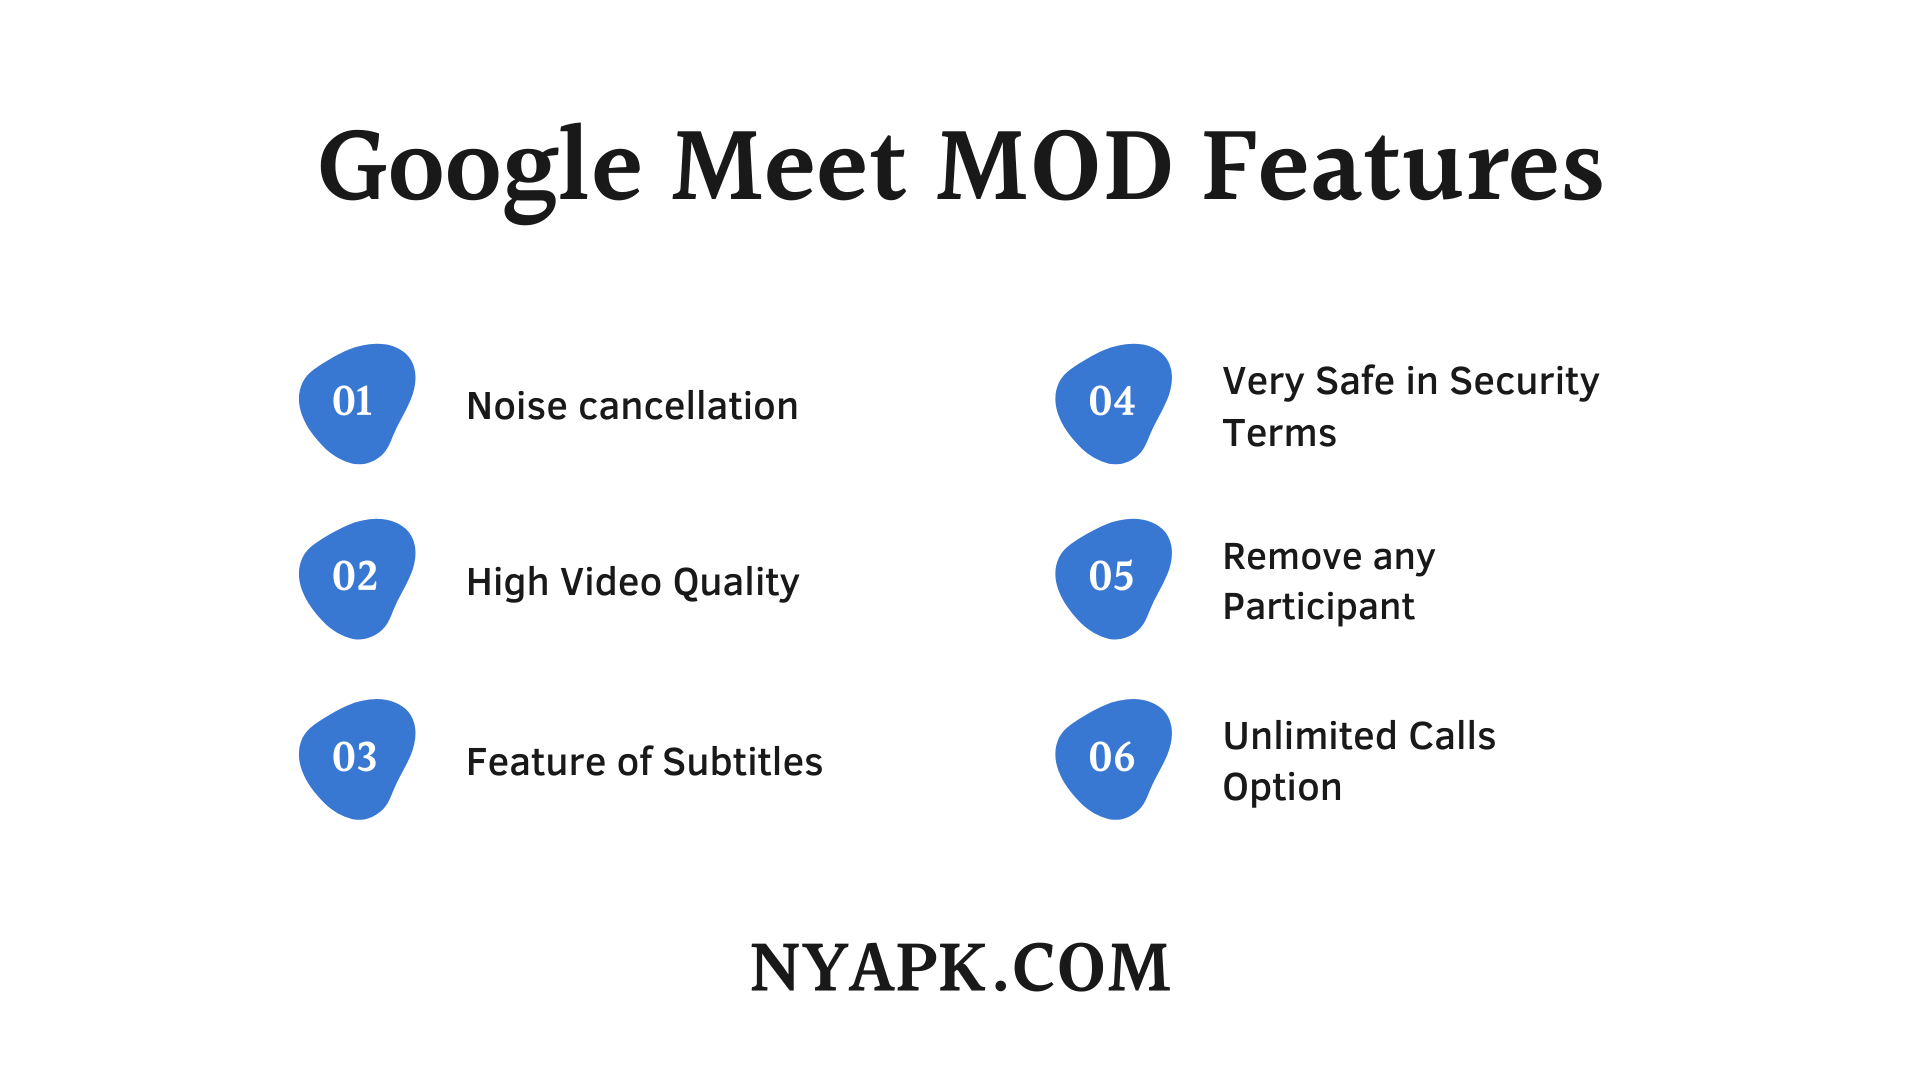 Google Meet MOD Features